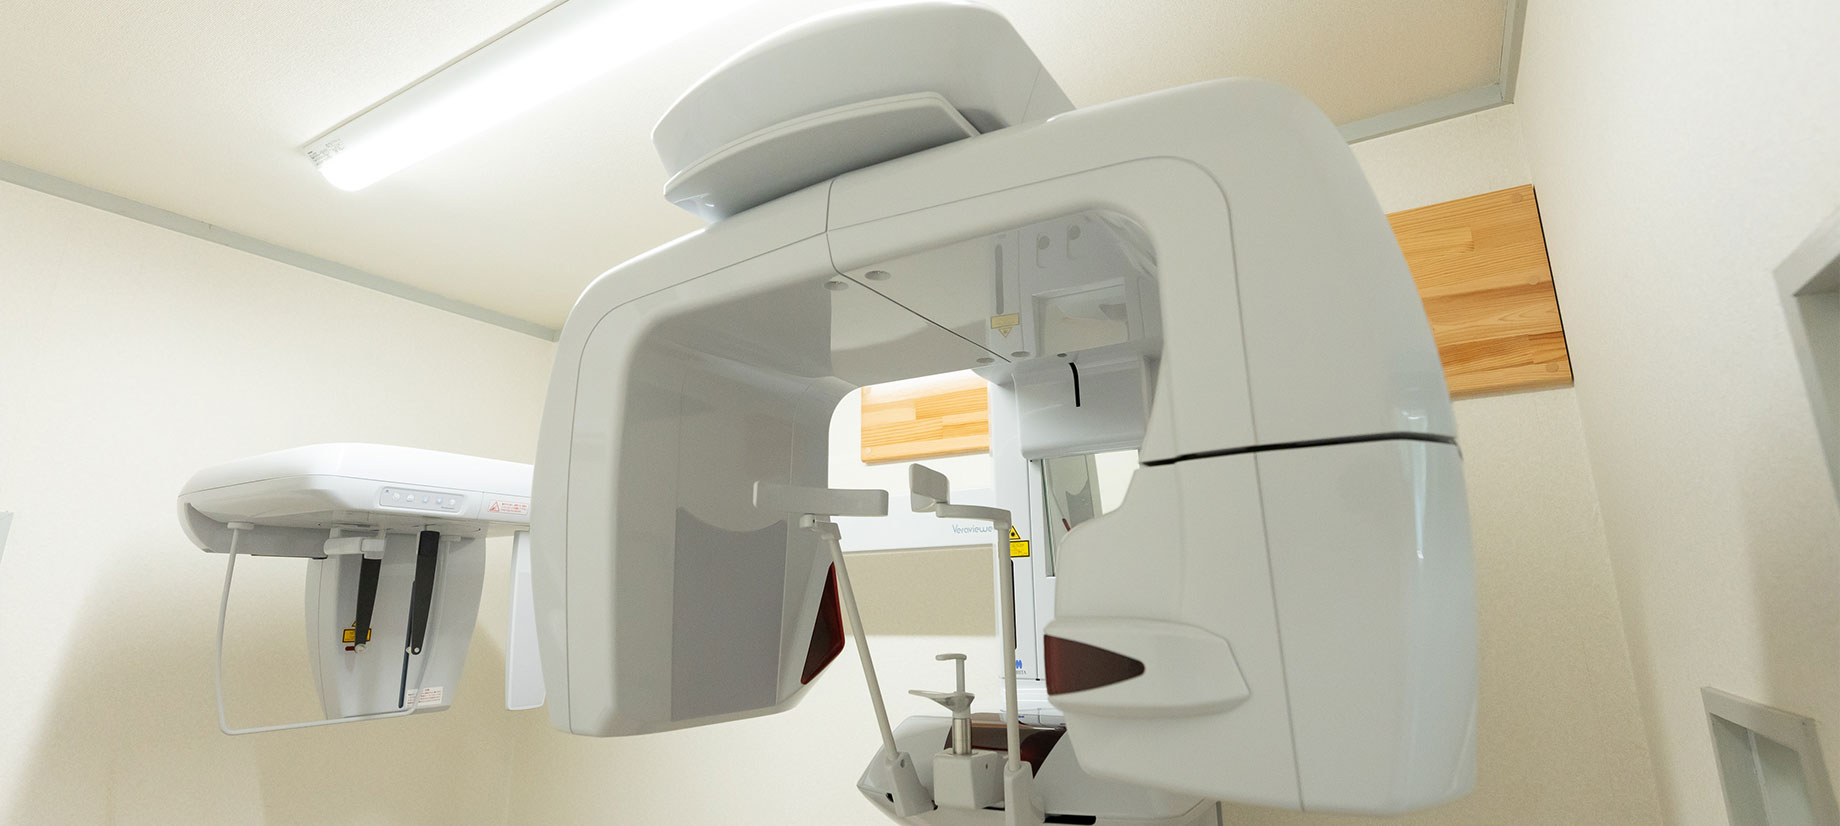 歯科用CTを使ったより精確な診査・診断